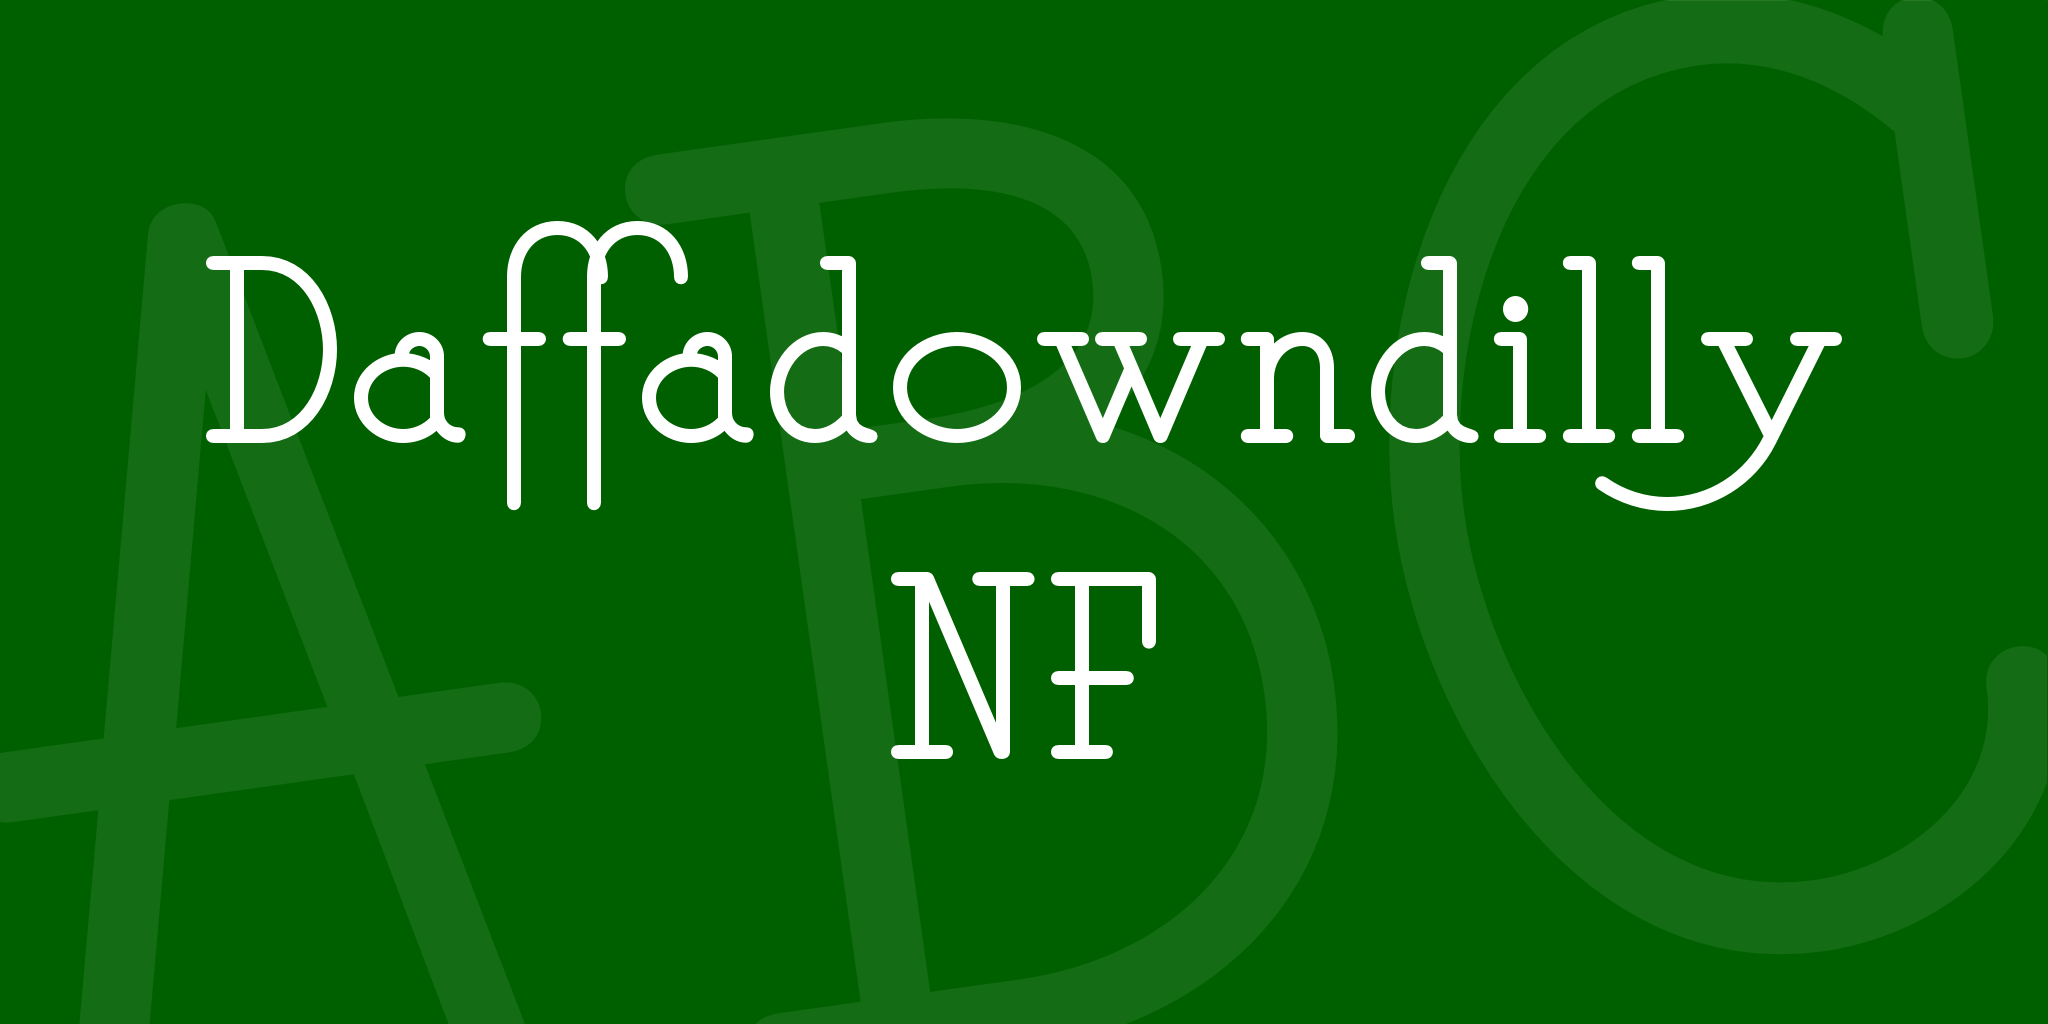 Daffadowndilly Nf